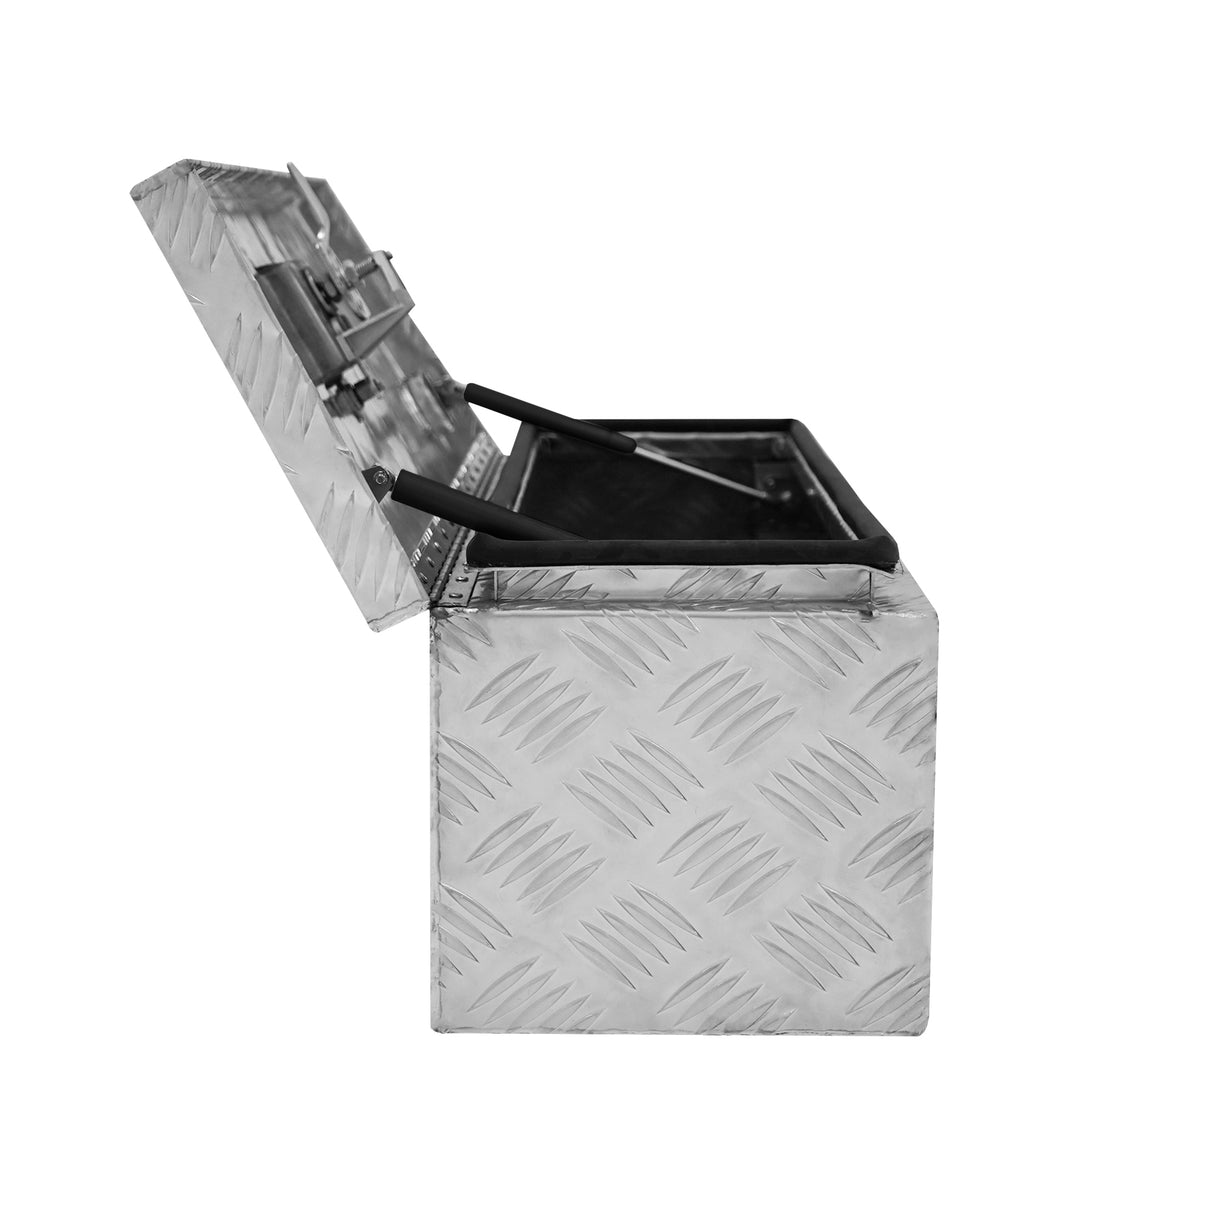 Cassetta degli attrezzi in alluminio 35L - Piccola